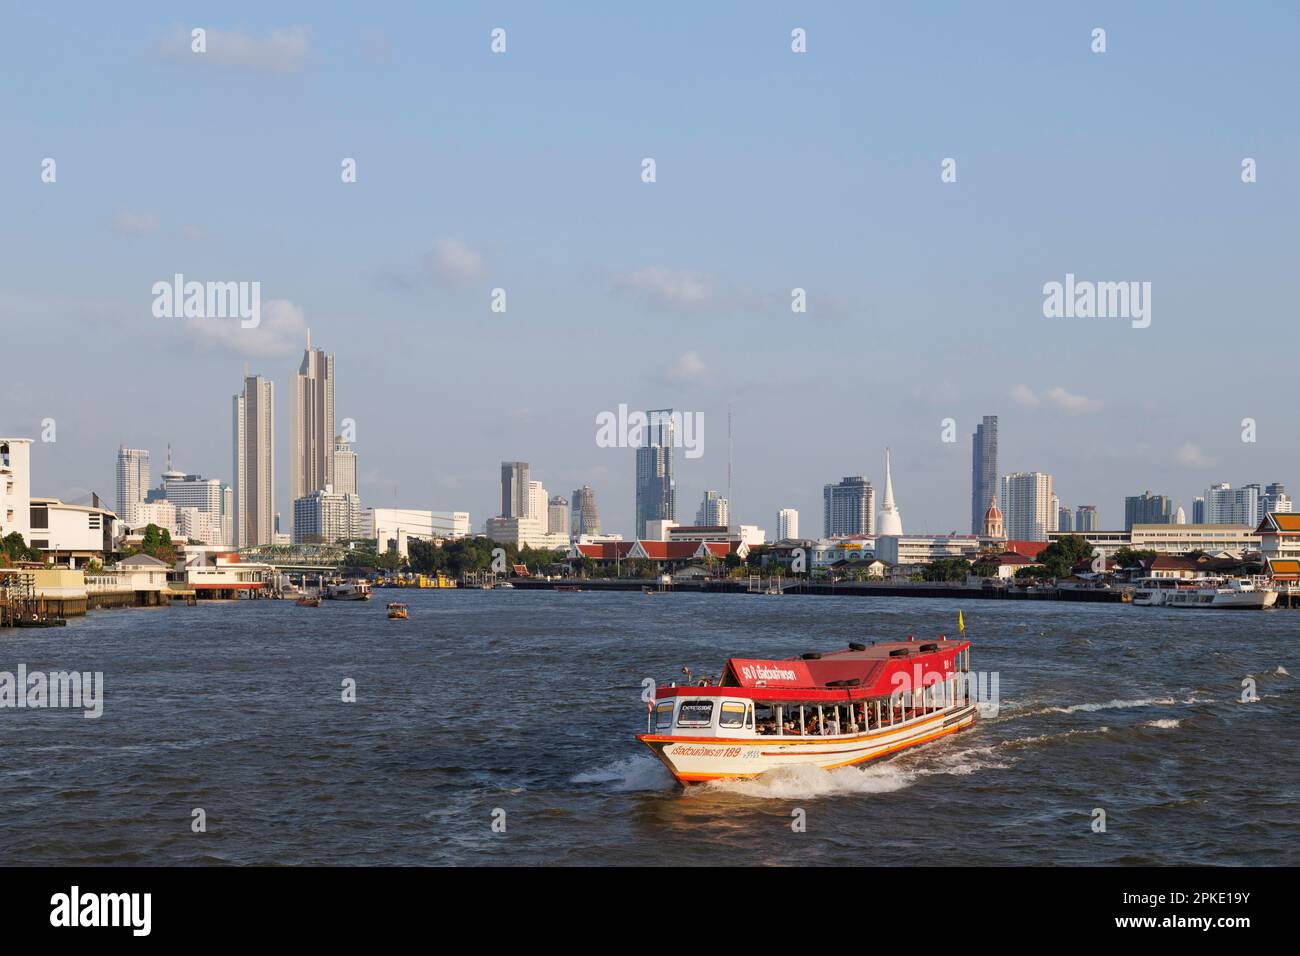 7 avril 2033 - Bangkok, Thaïlande : les touristes asiatiques, européens et thaïlandais voyagent en bateau express dans la rivière Chao Phraya à Bangkok, Thaïlande. Trave Banque D'Images